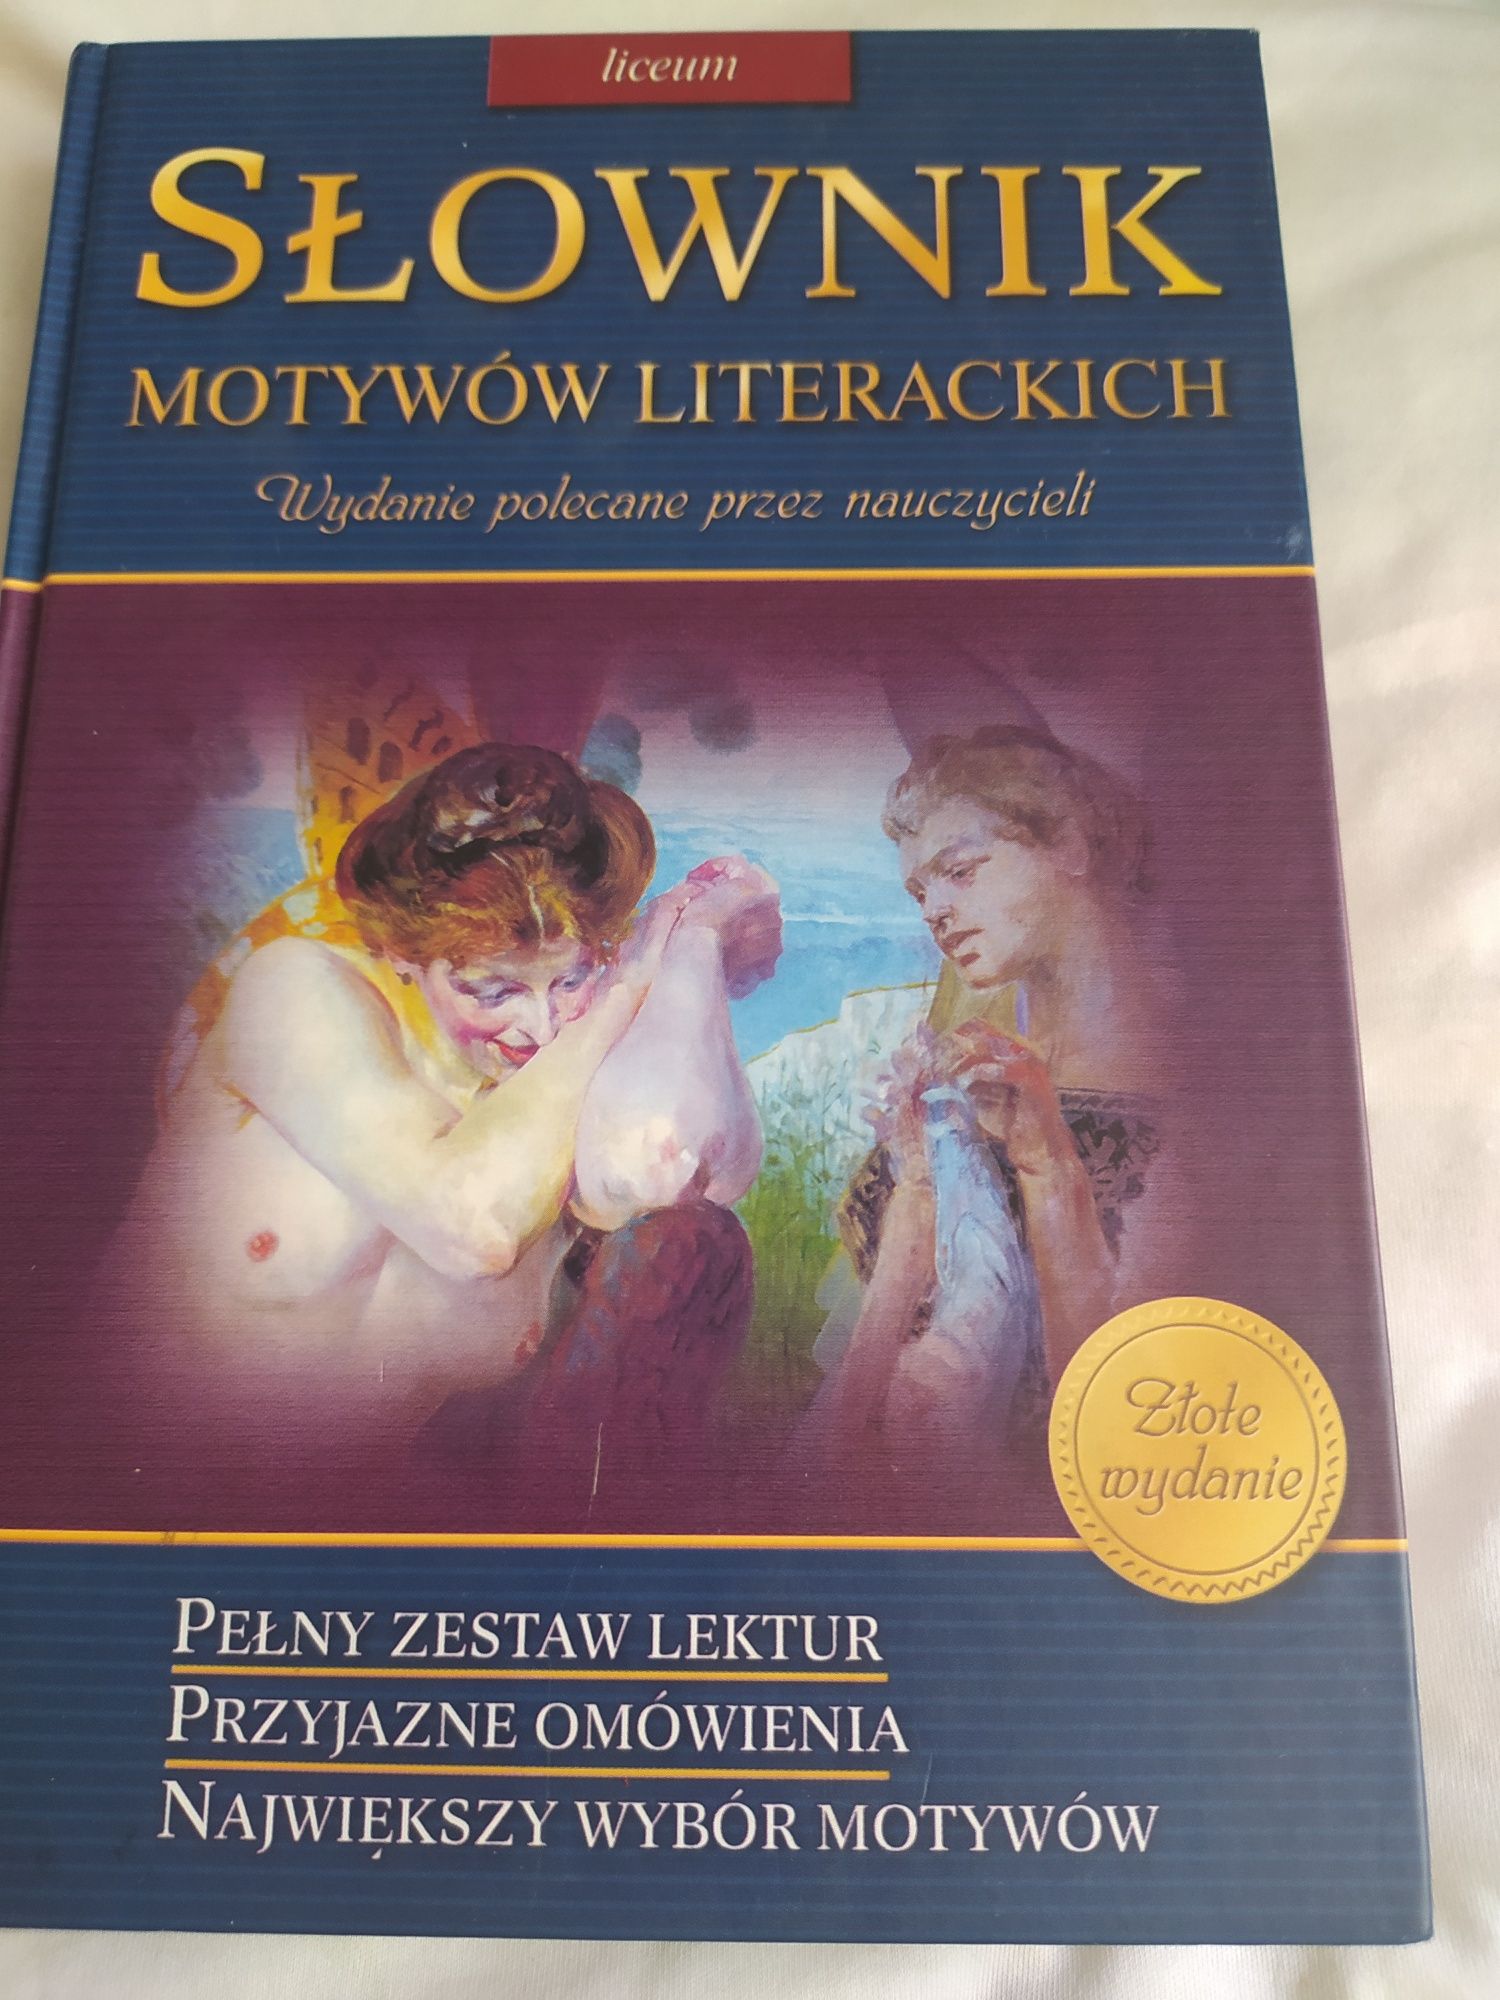 Słownik motywów literackich liceum złote wydanie